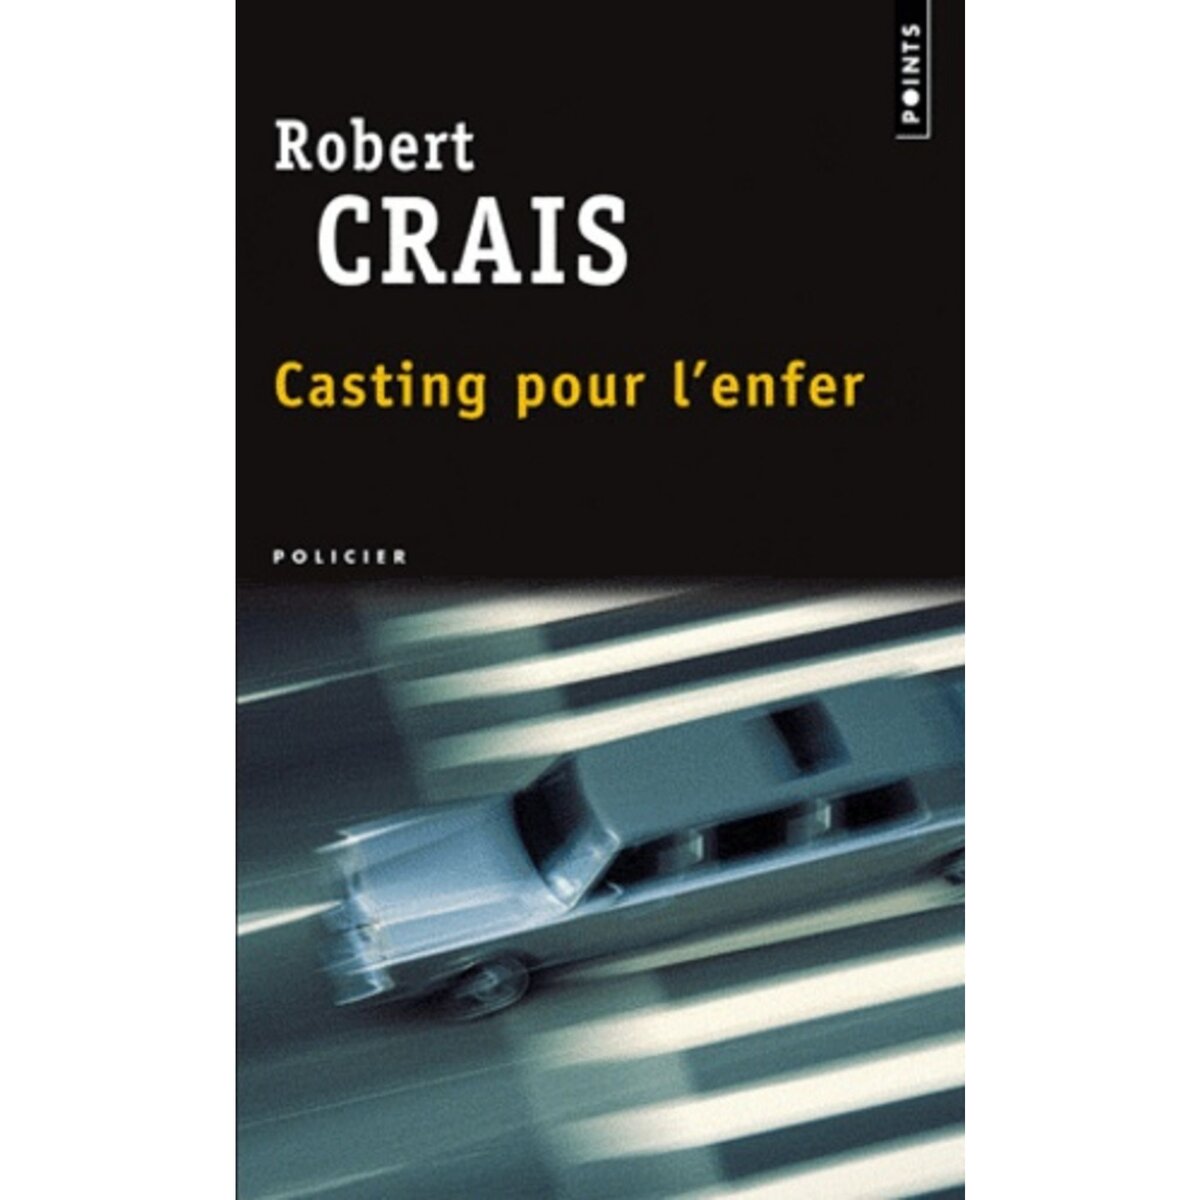  CASTING POUR L'ENFER, Crais Robert